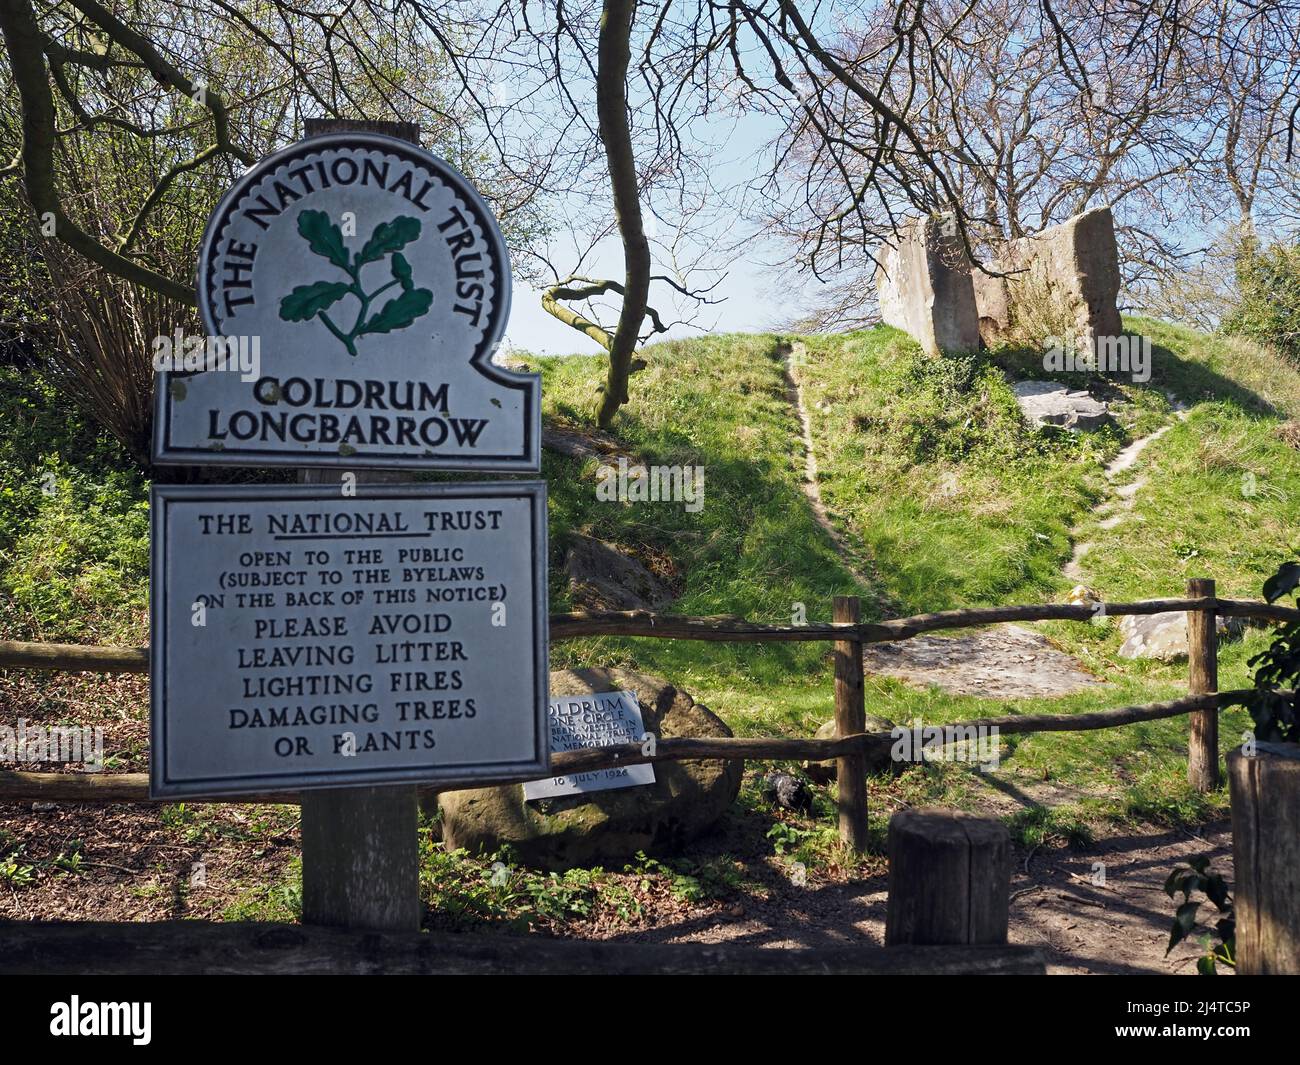 Il lungo Barrow del Coldrum, o pietre del Coldrum o pietre di Adscombe, è un lungo barrow neolitico con camera di sepoltura, vicino a Trottiscliff in Kent, Inghilterra Foto Stock